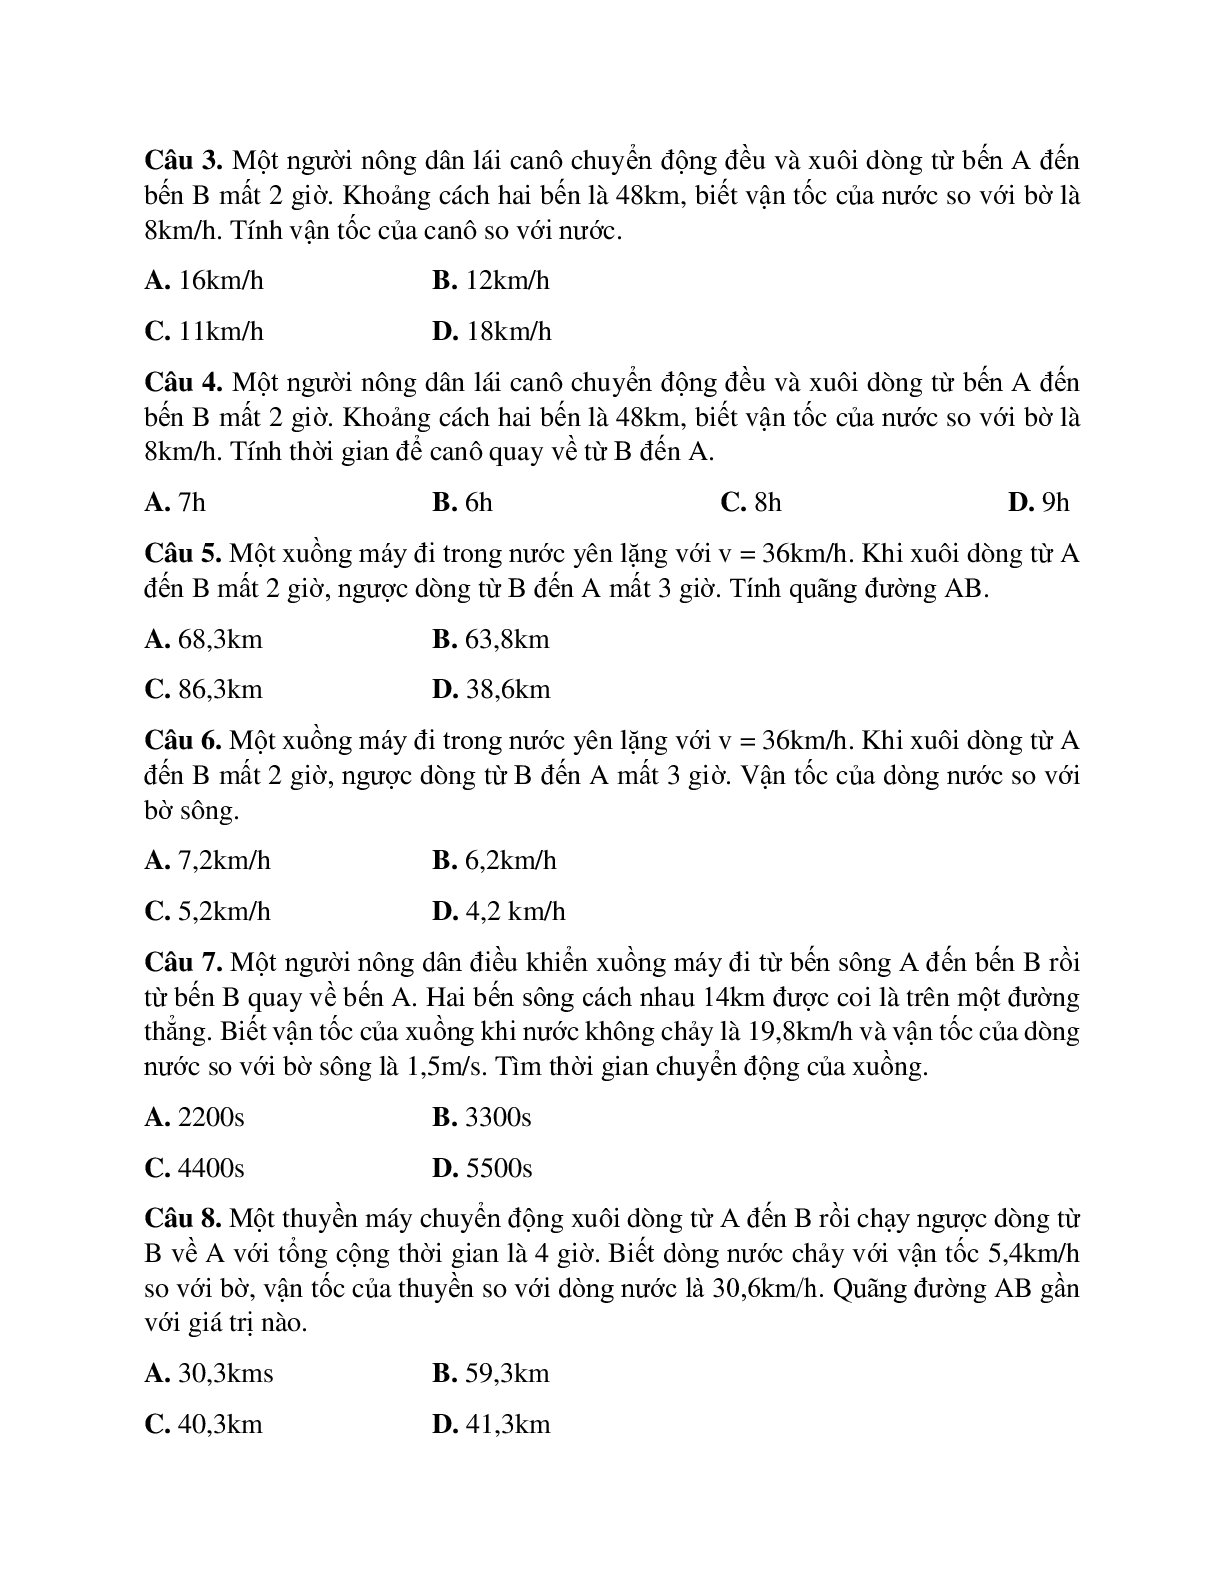 Bài tập về tính tương đối của chuyển động có đáp án (trang 5)